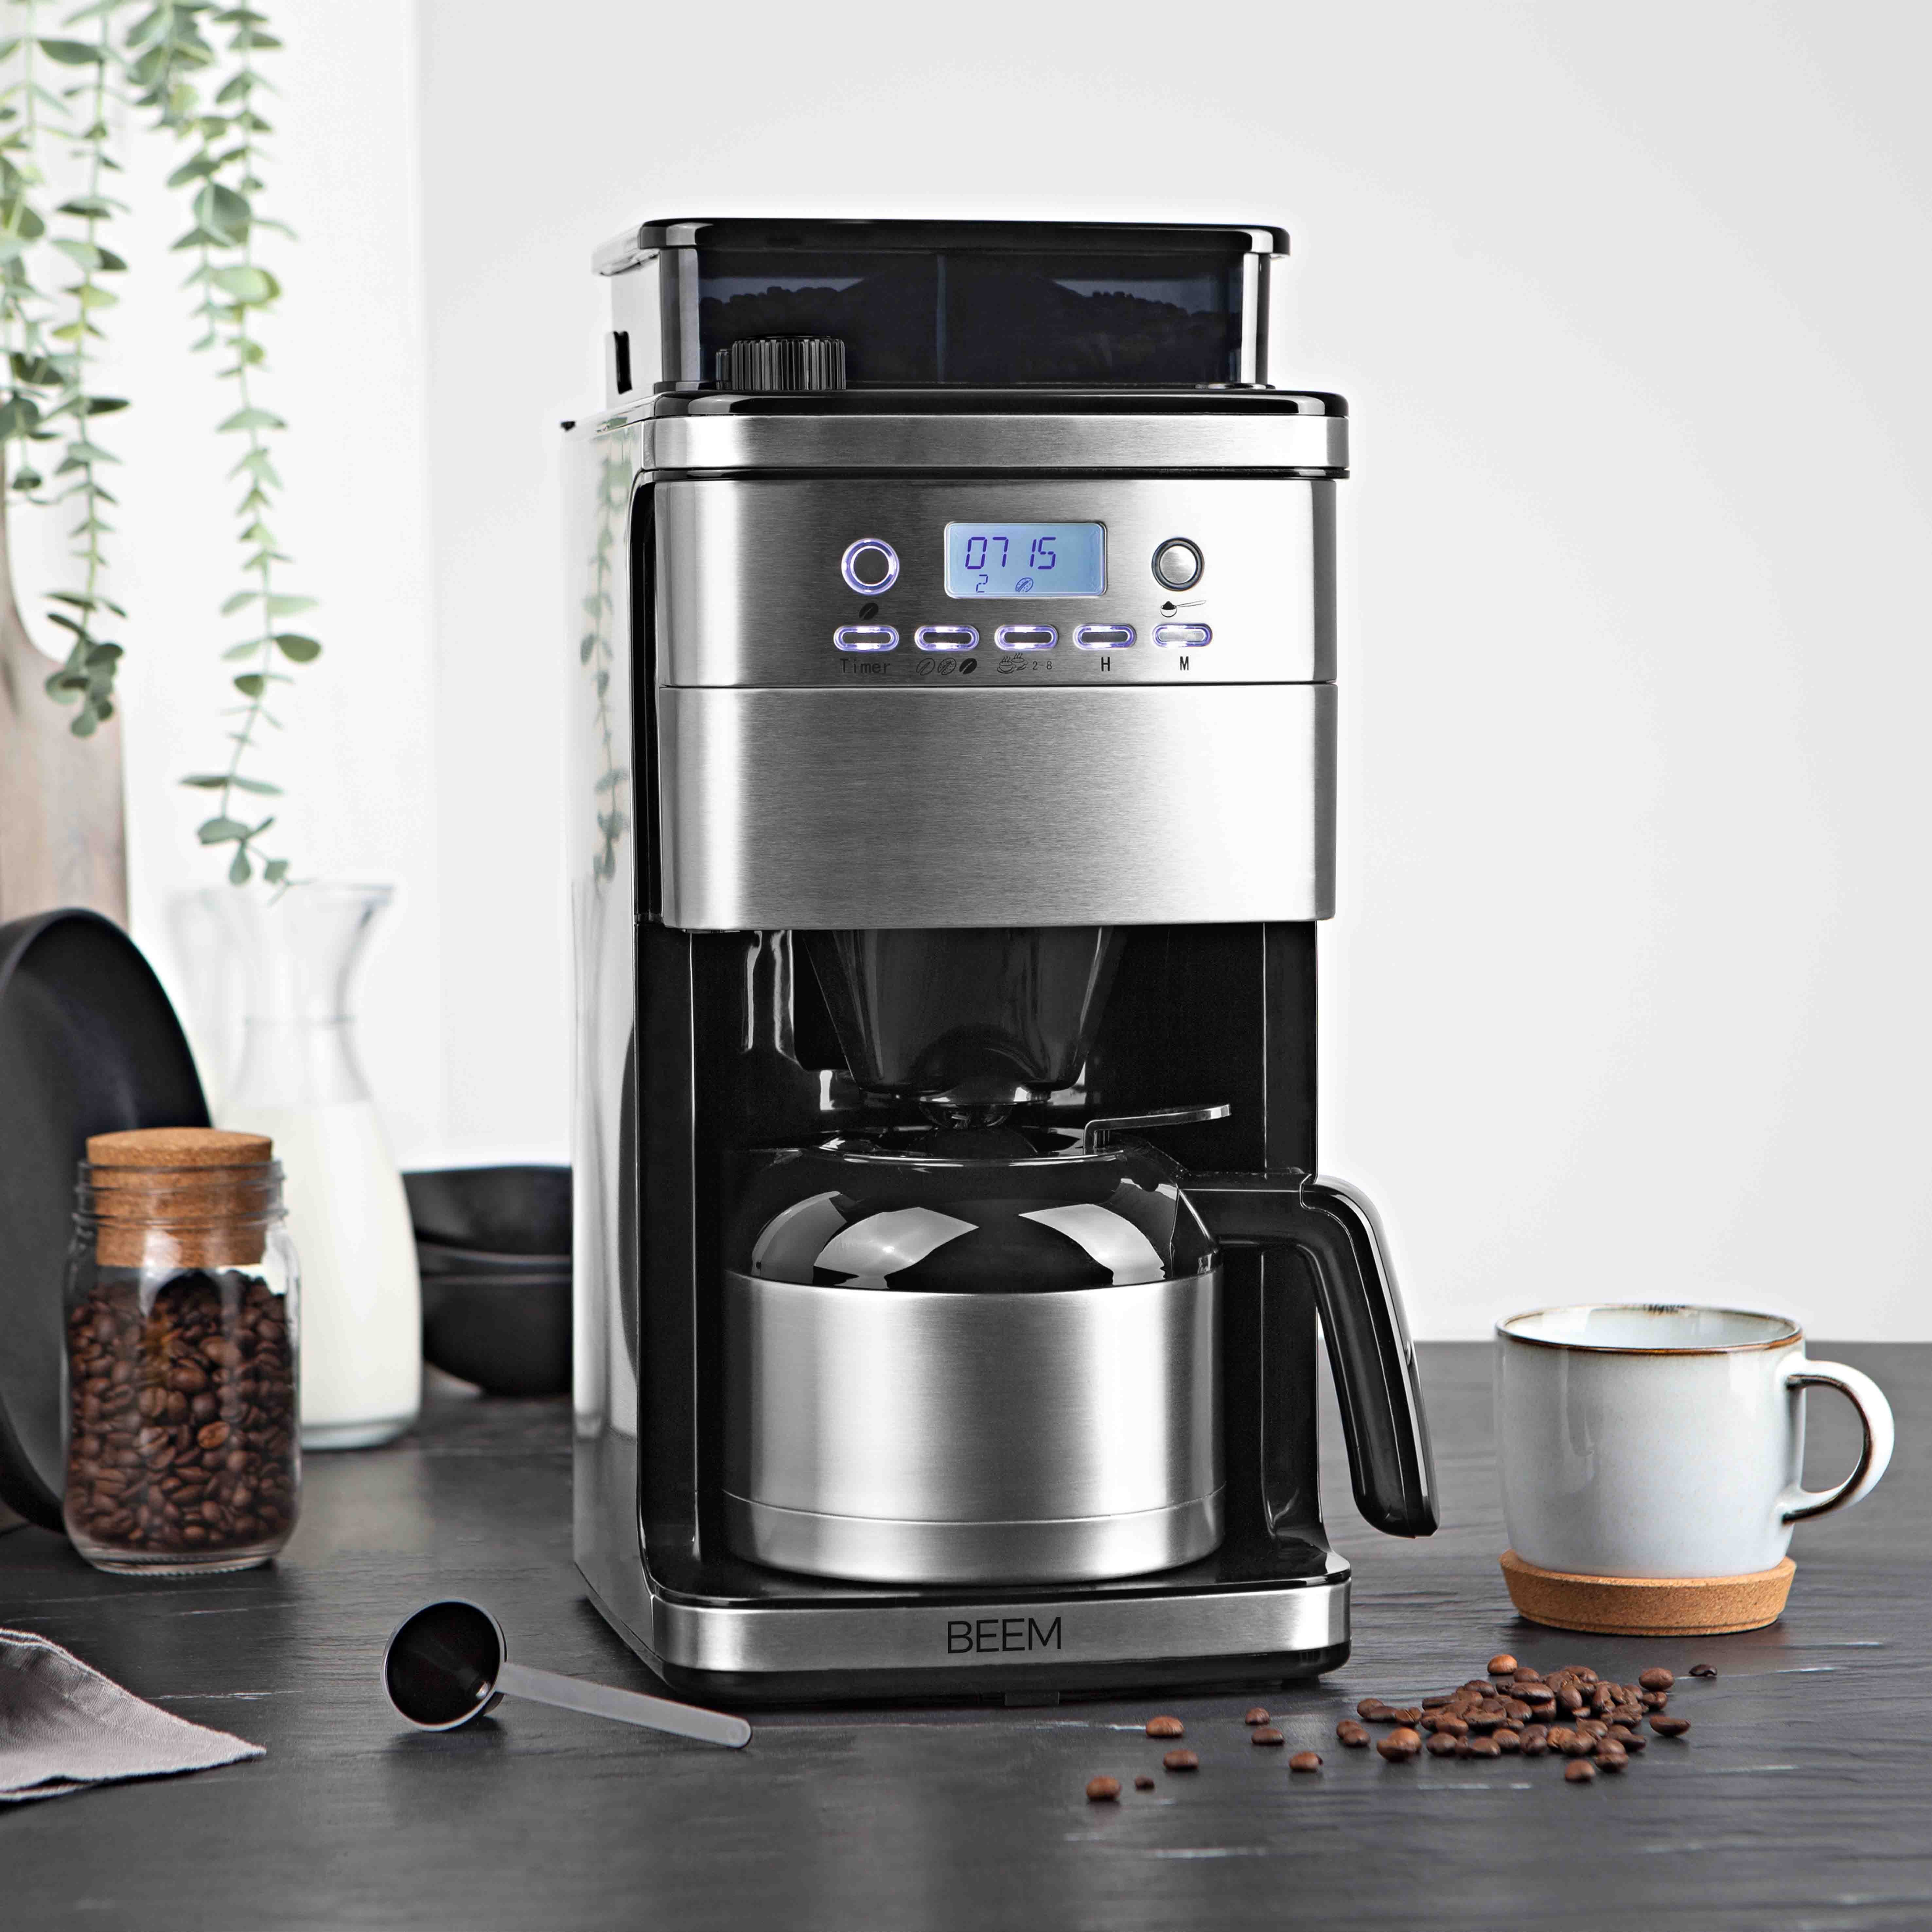 BEEM Filterkaffeemaschine FRESH-AROMA-PERFECT möglich und Mahlwerk Kaffeepulver Zubereitung Kaffeebohnen Permanentfilter, 8 Thermokanne Tassen, mit